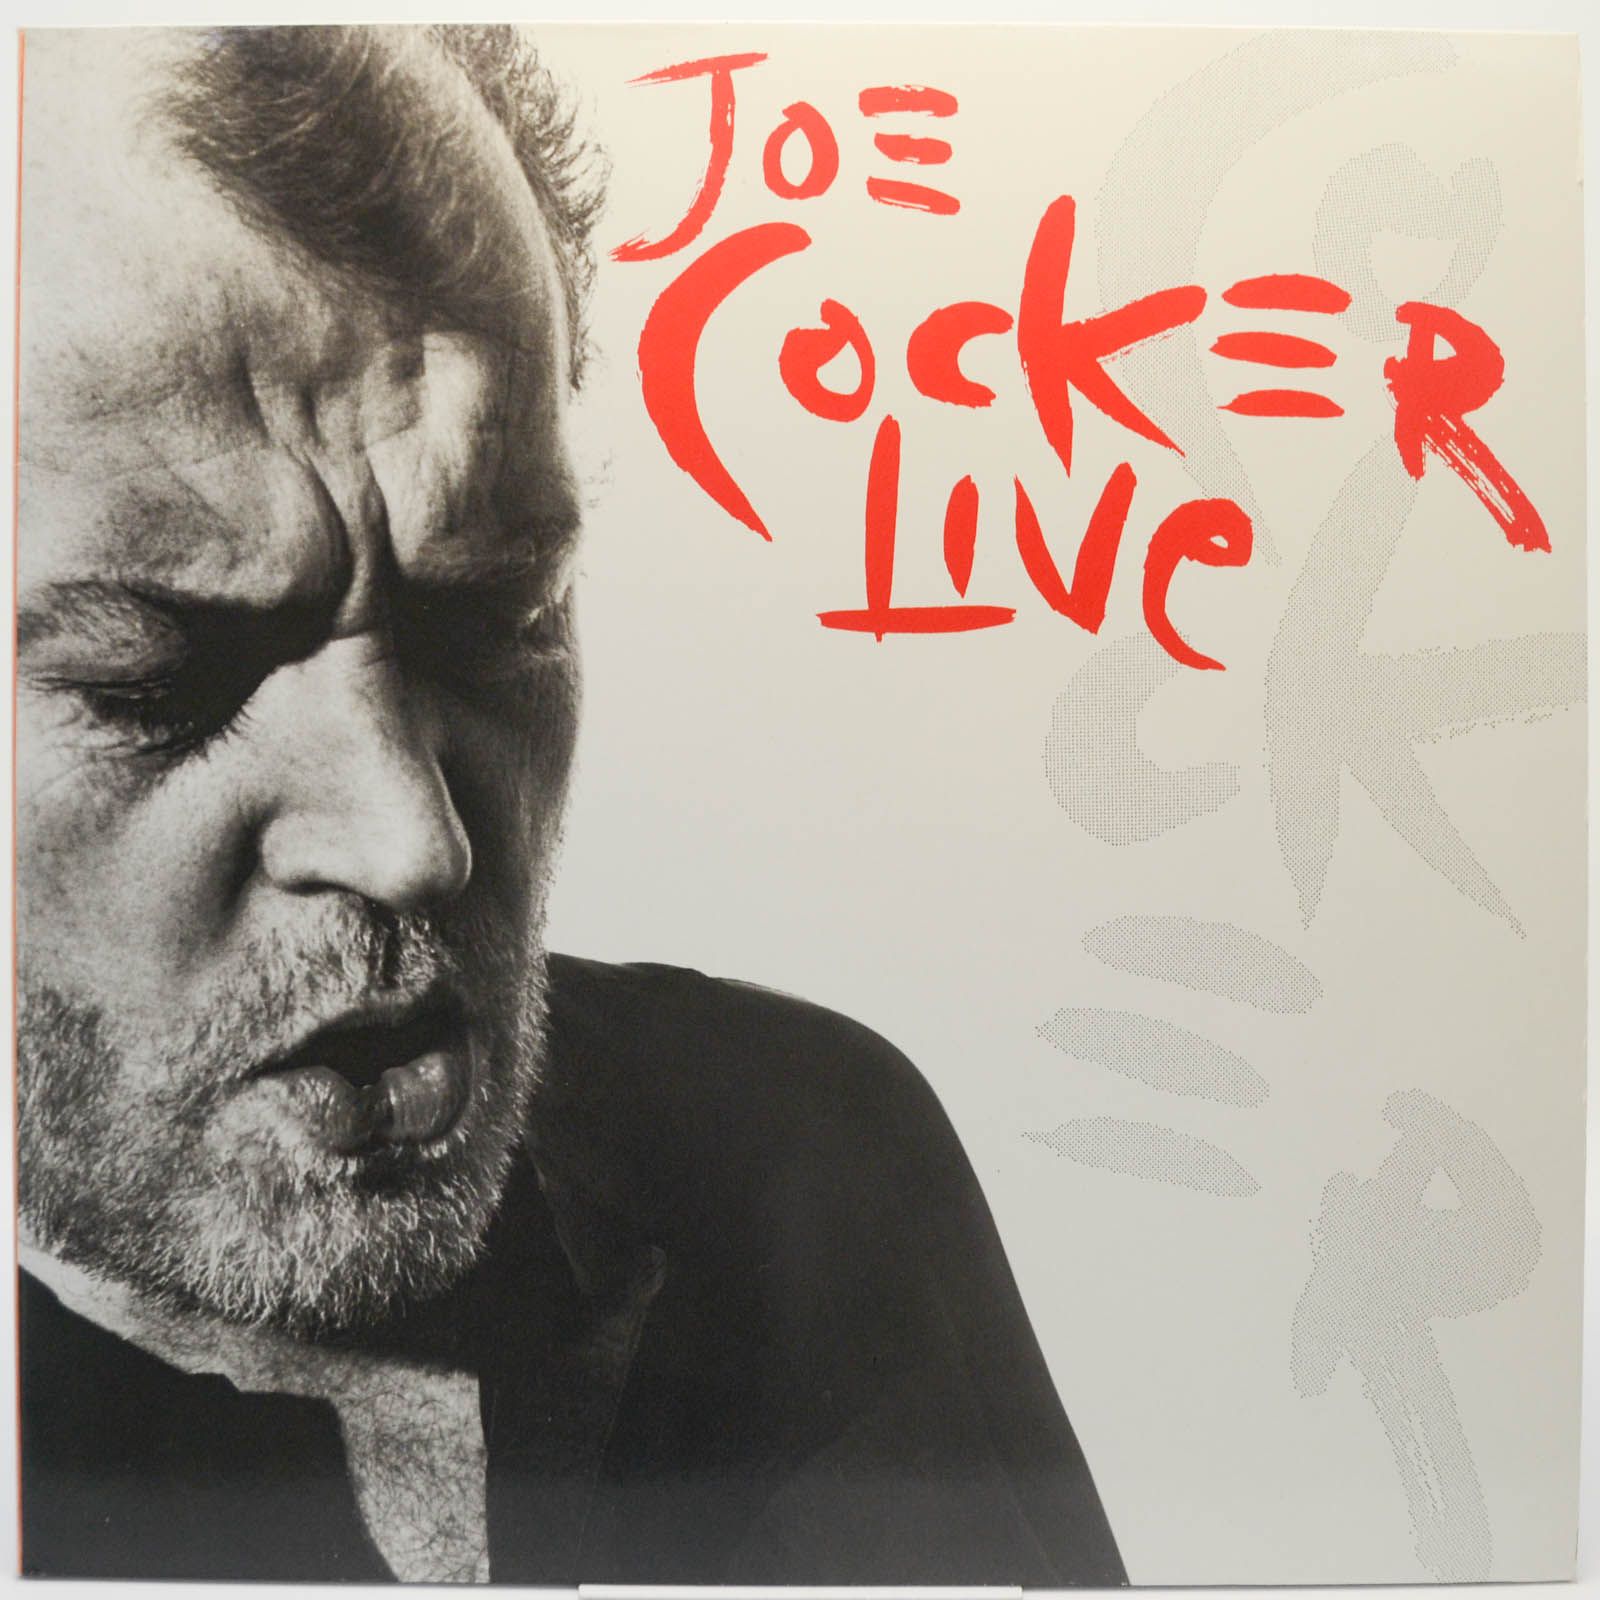 Joe Cocker — Joe Cocker Live! (2LP), 1990